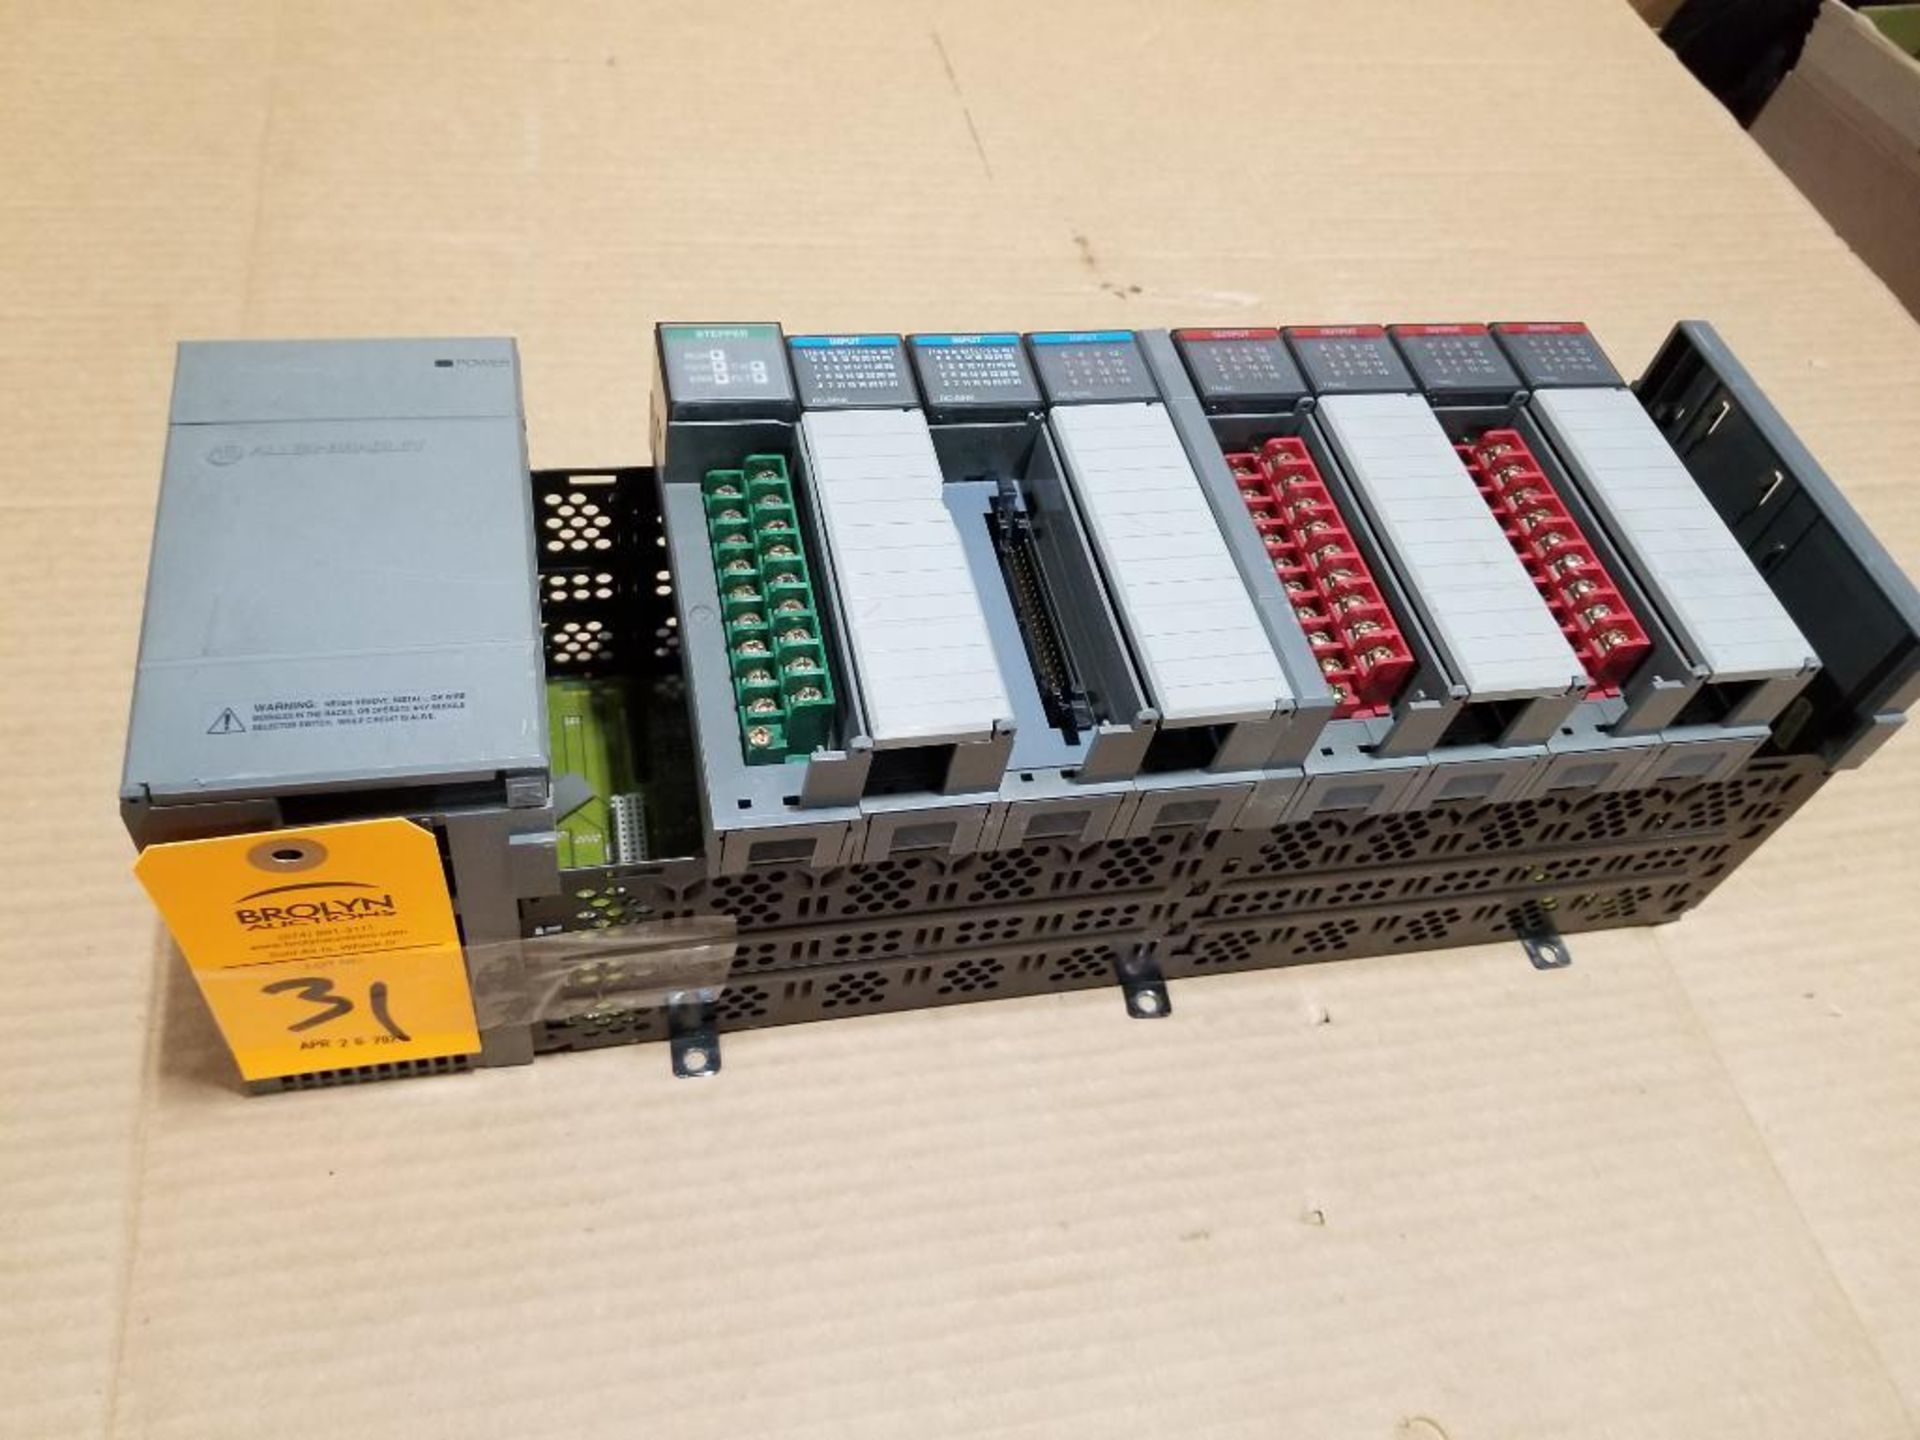 Allen Bradley SLC500 PLC rack.